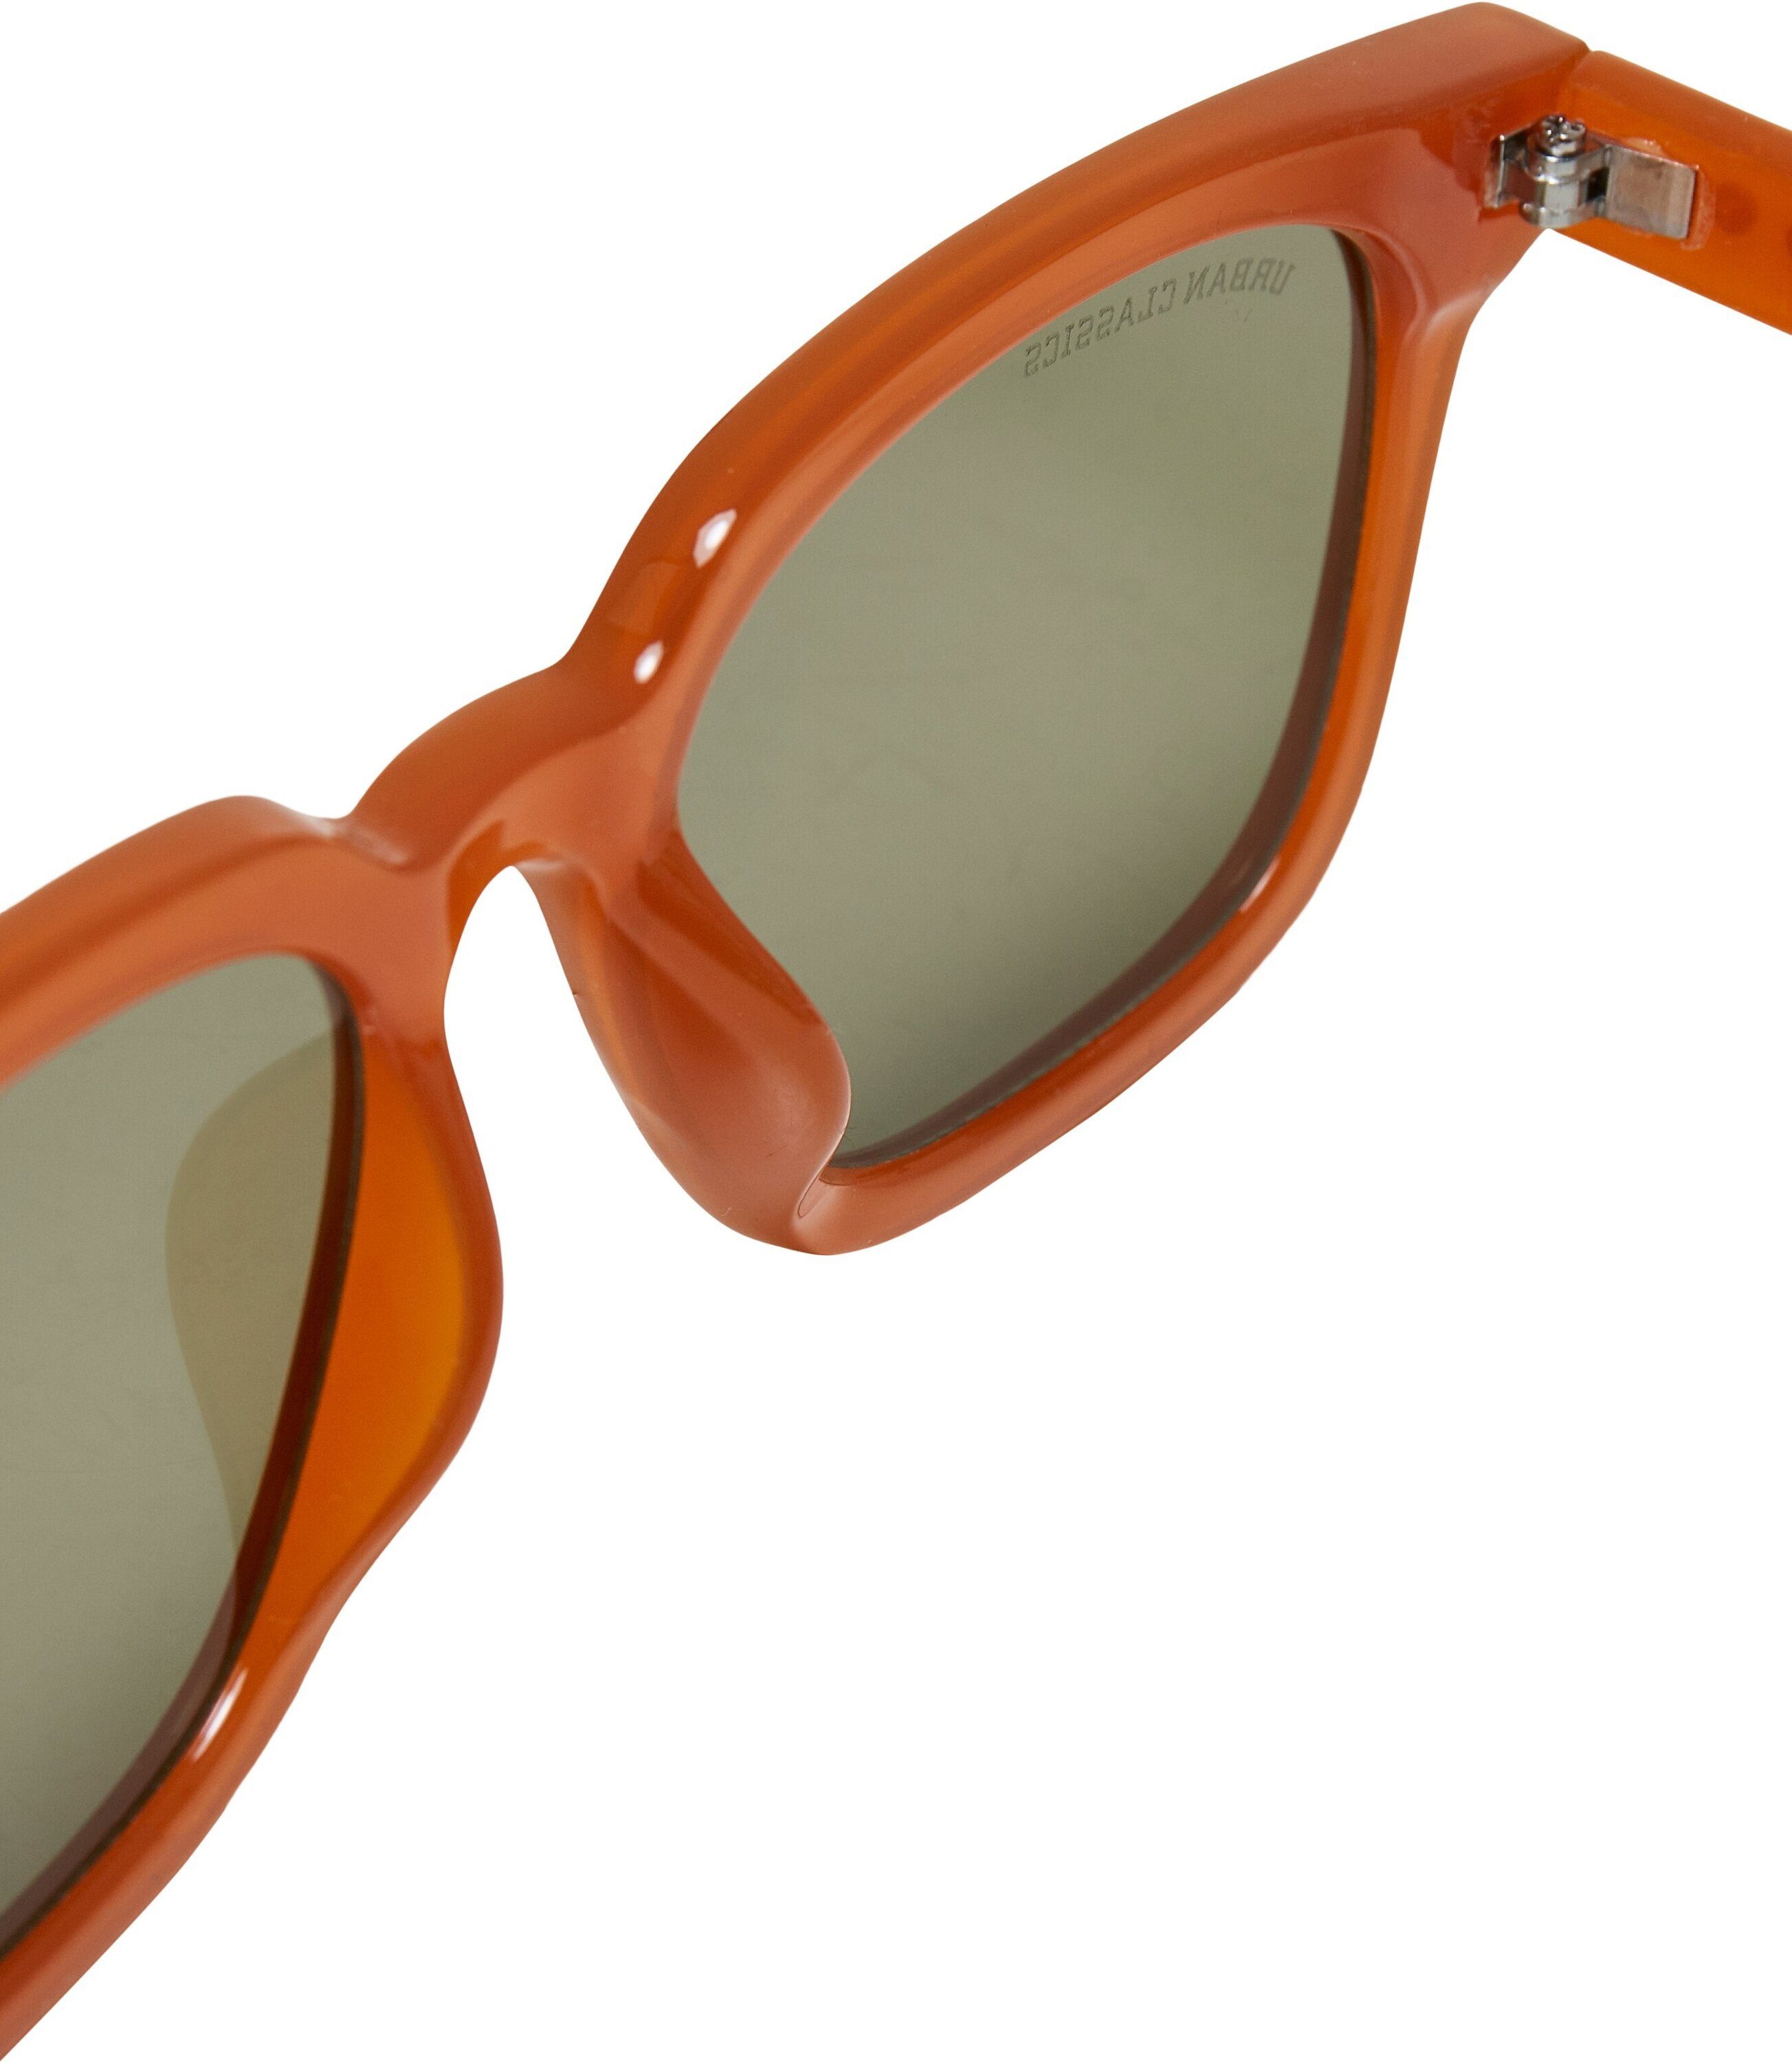 URBAN Sunglasses CLASSICS Sonnenbrille Unisex Chicago 3-Pack